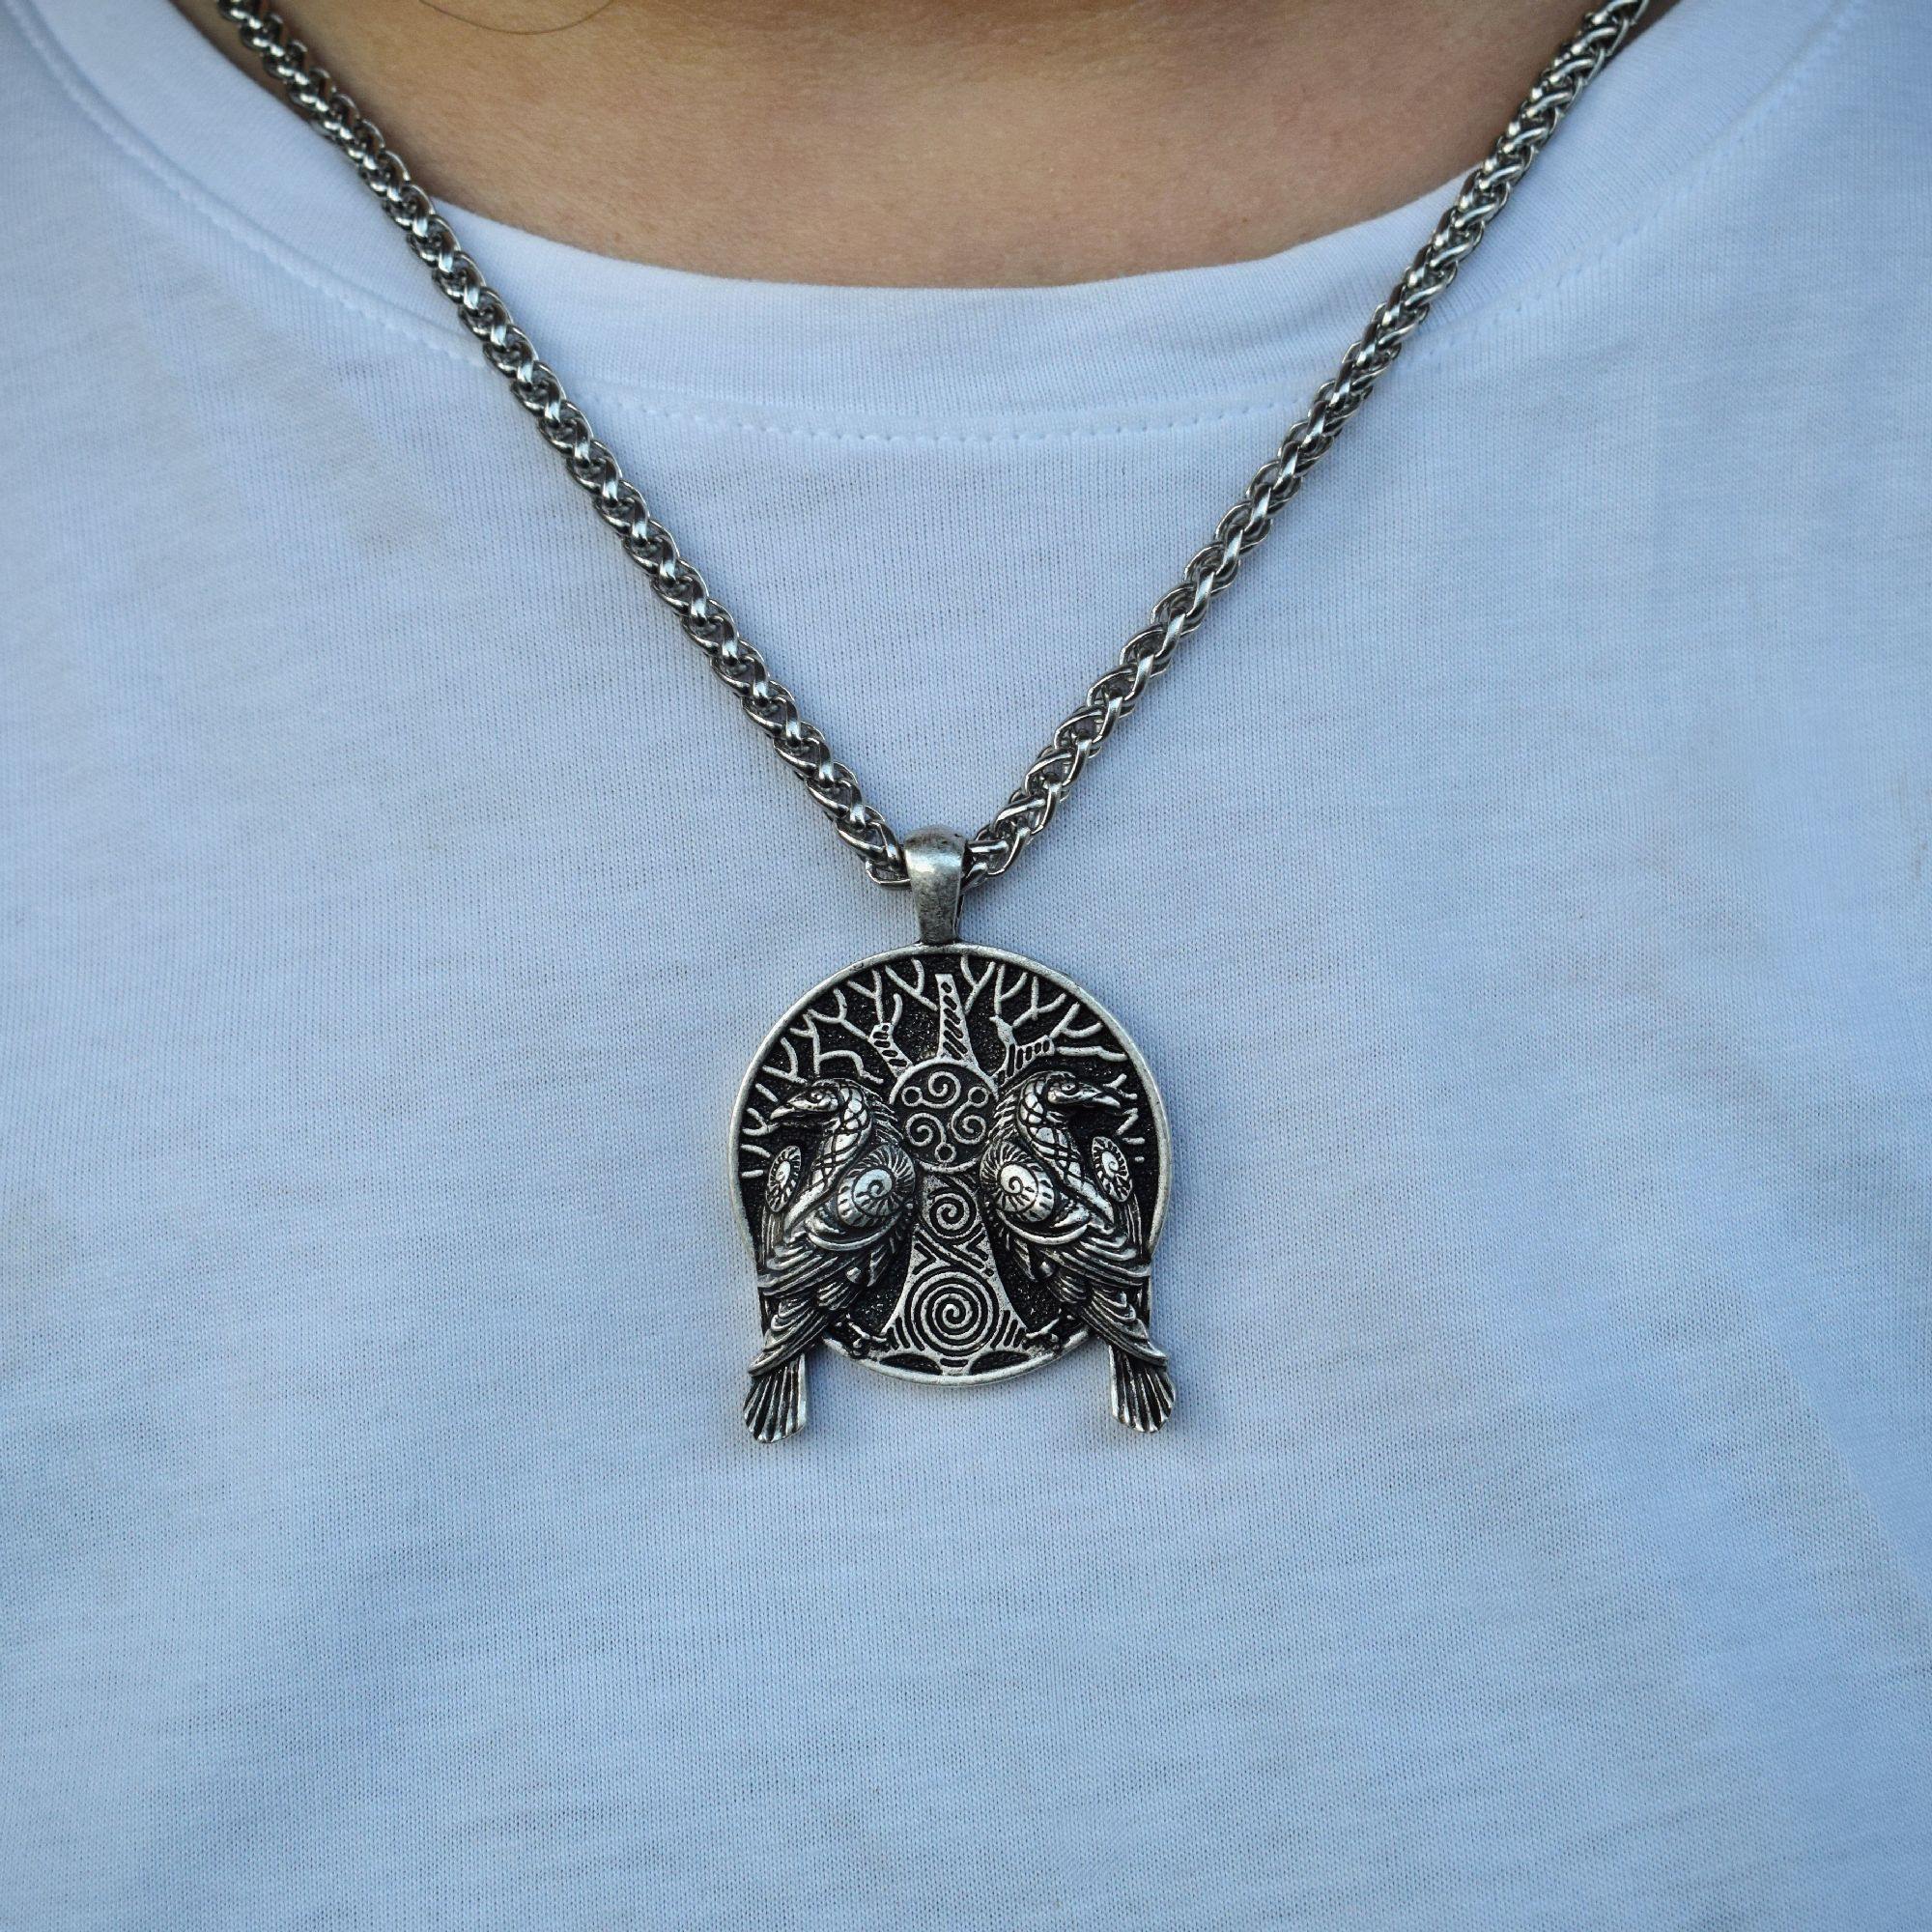 Huginn, Muninn 3D Necklace - Wyvern's Hoard